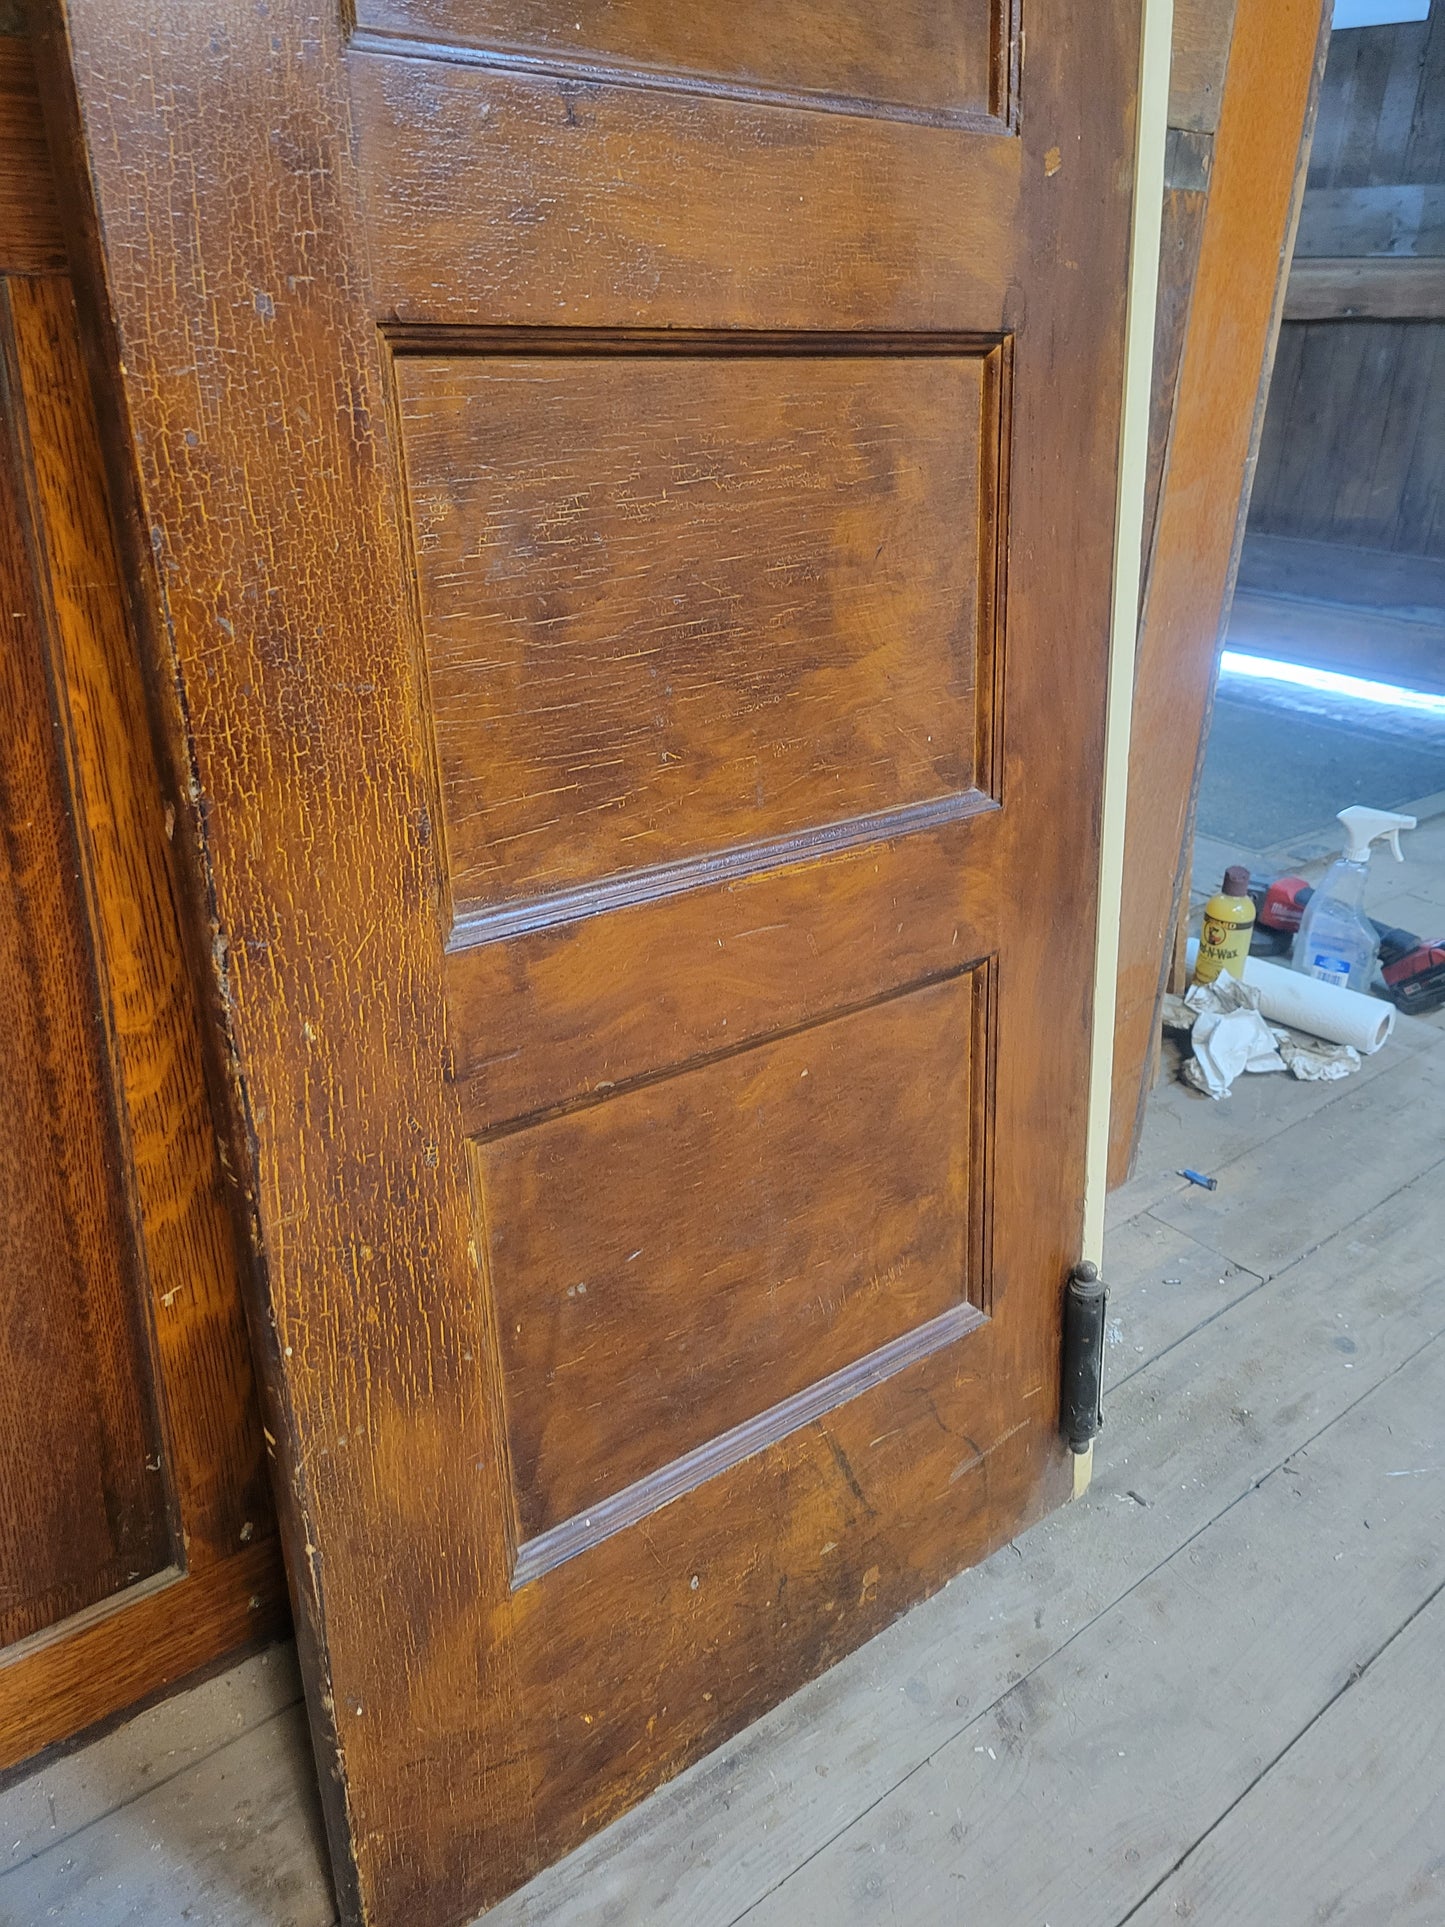 24" Narrow Vintage Swinging Door with Window, Wood and Glass Butler Style Door